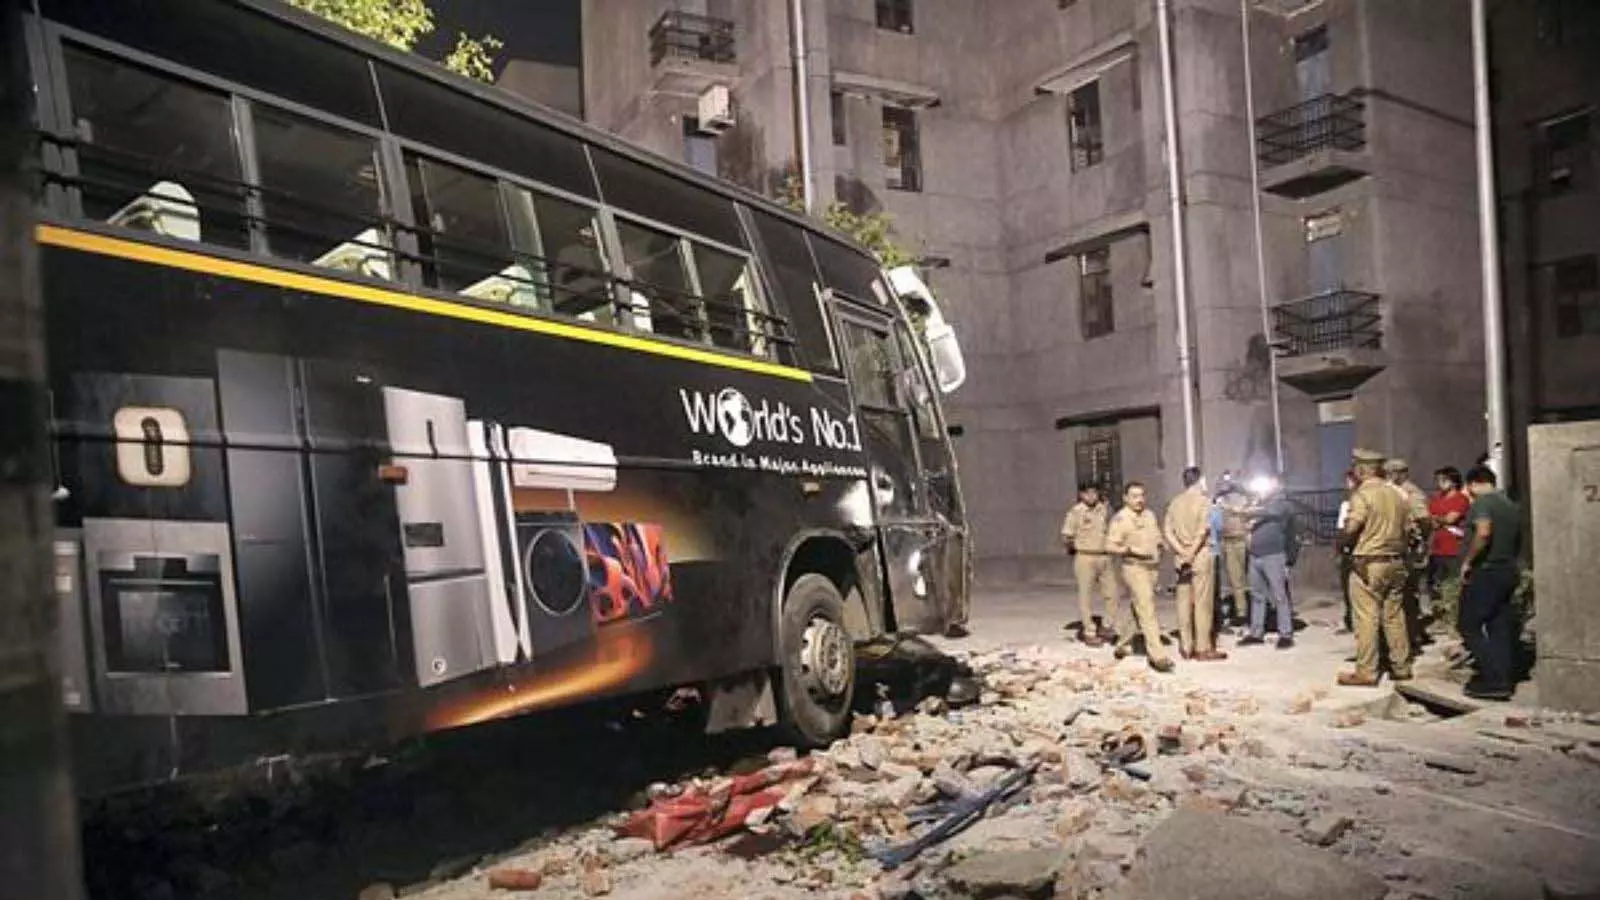 High speed bus: तेज रफ्तार बस दीवार को तोड़ते हुए सोसायटी में घुसी